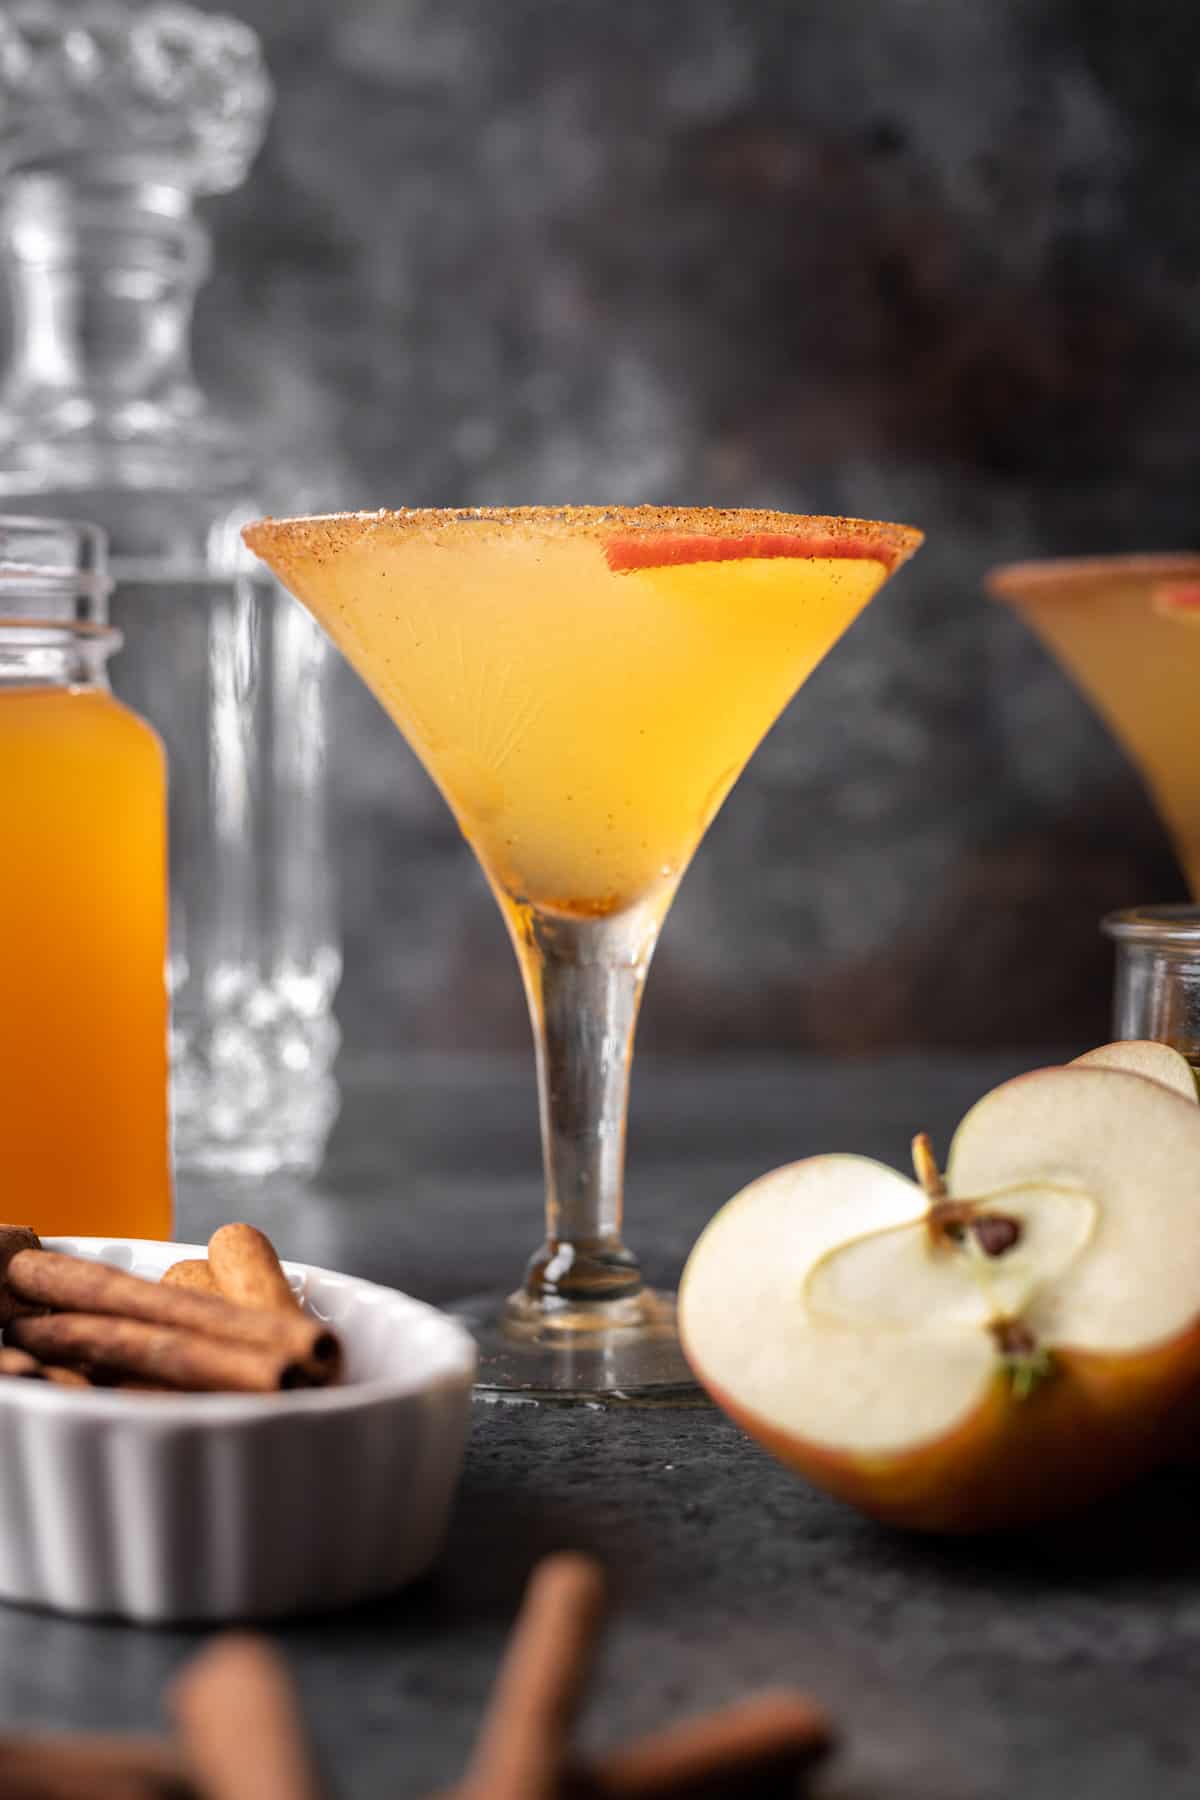 Apple cider martini with a cinnamon sugar rim.